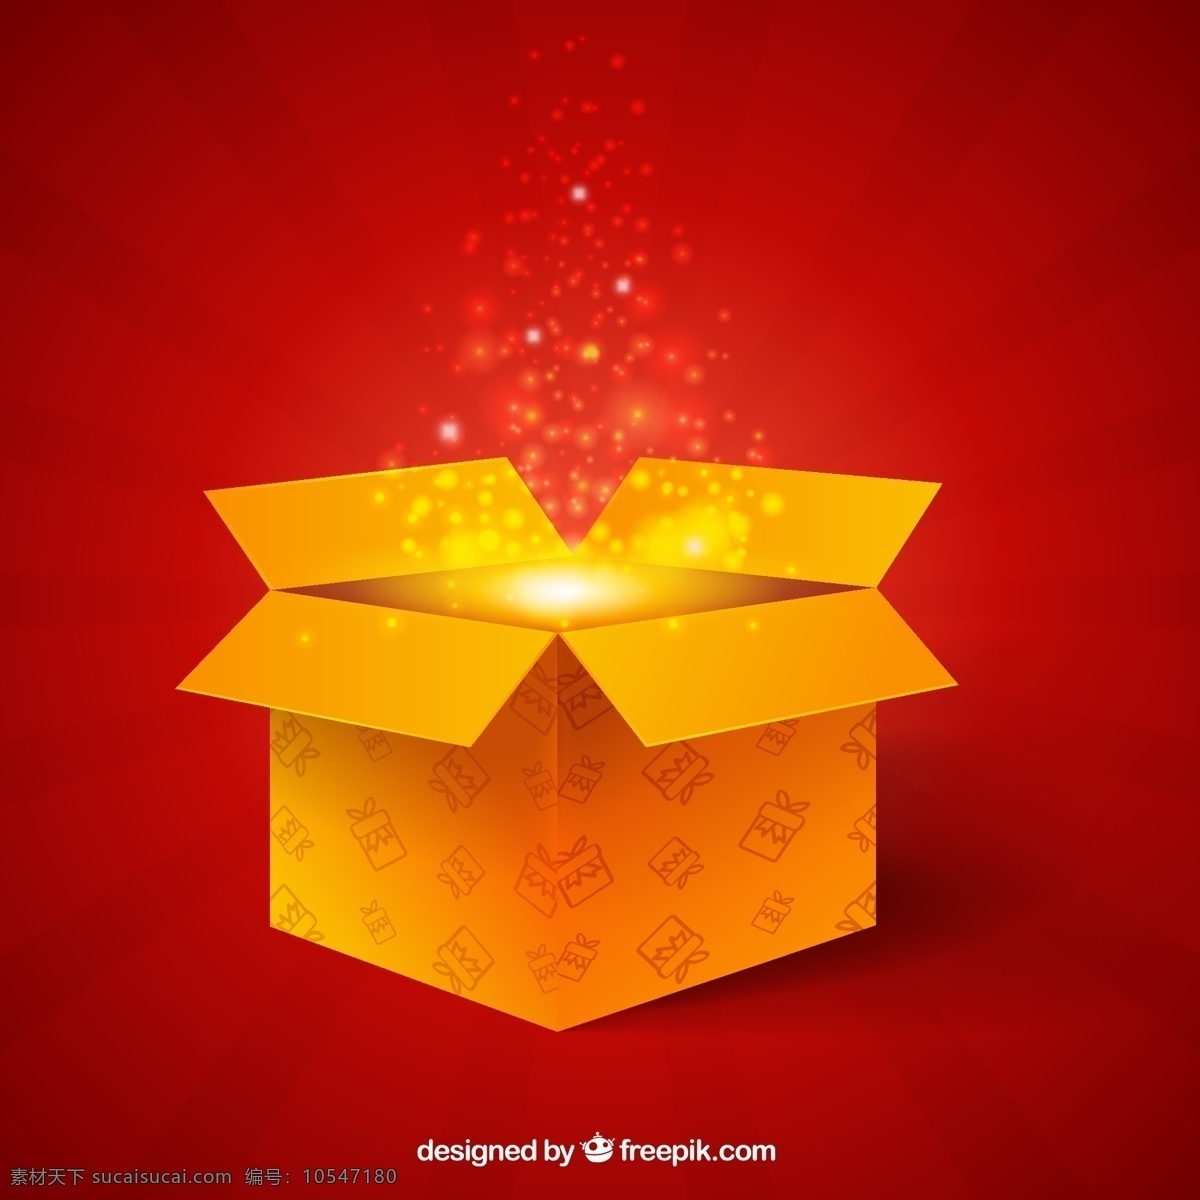 红色 盒子 矢量图 h5 背景 2017年 h5背景 盒子背景 红色背景 激情 惊喜 狂欢 礼盒 礼物 新年礼物